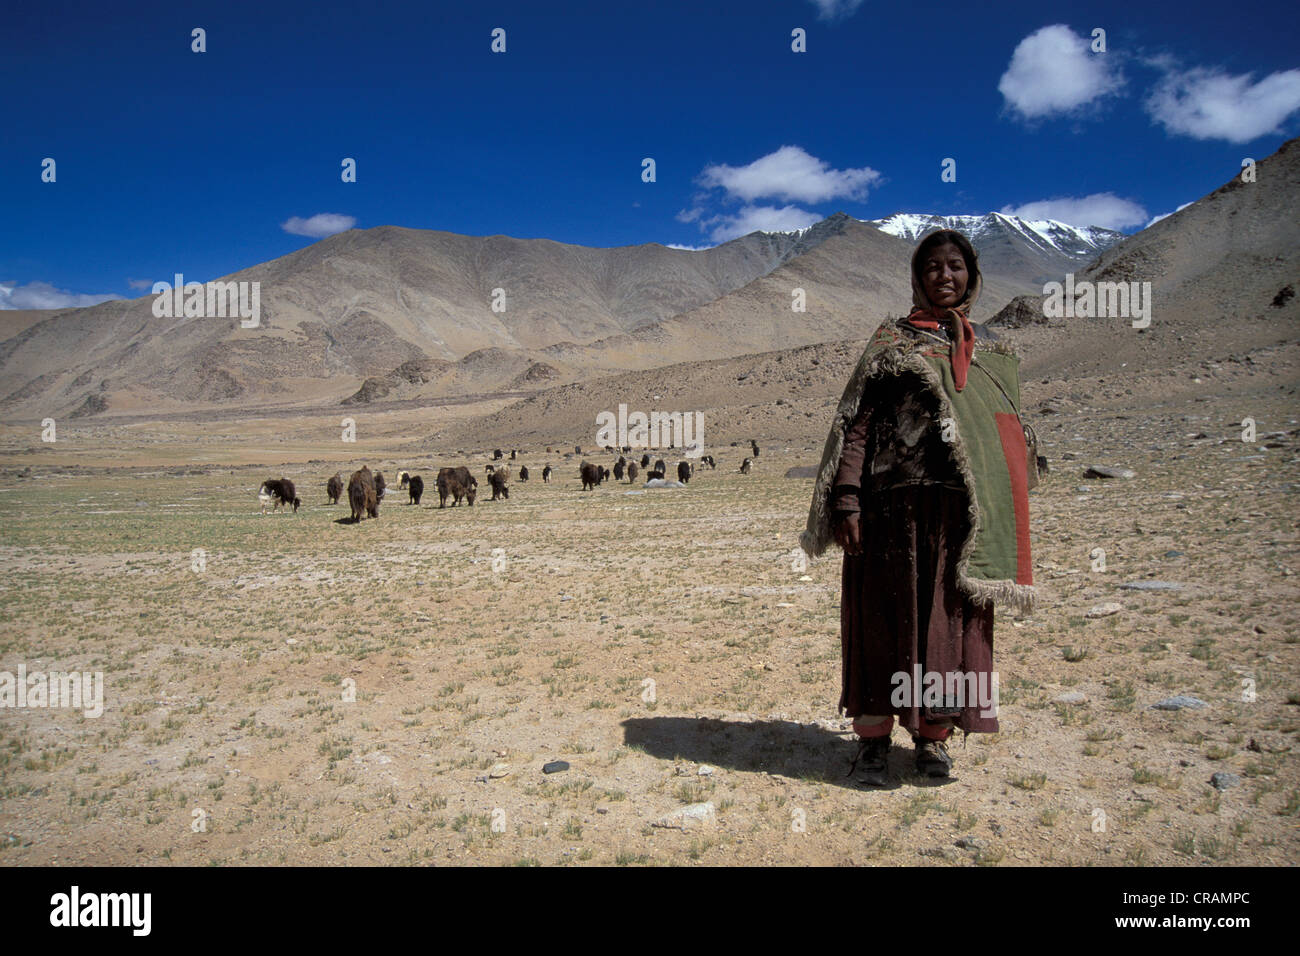 Femme occuper des chèvres, Tazang Tso, Ladakh, Himalaya indien, le Jammu-et-Cachemire, l'Inde du nord, Inde, Asie Banque D'Images